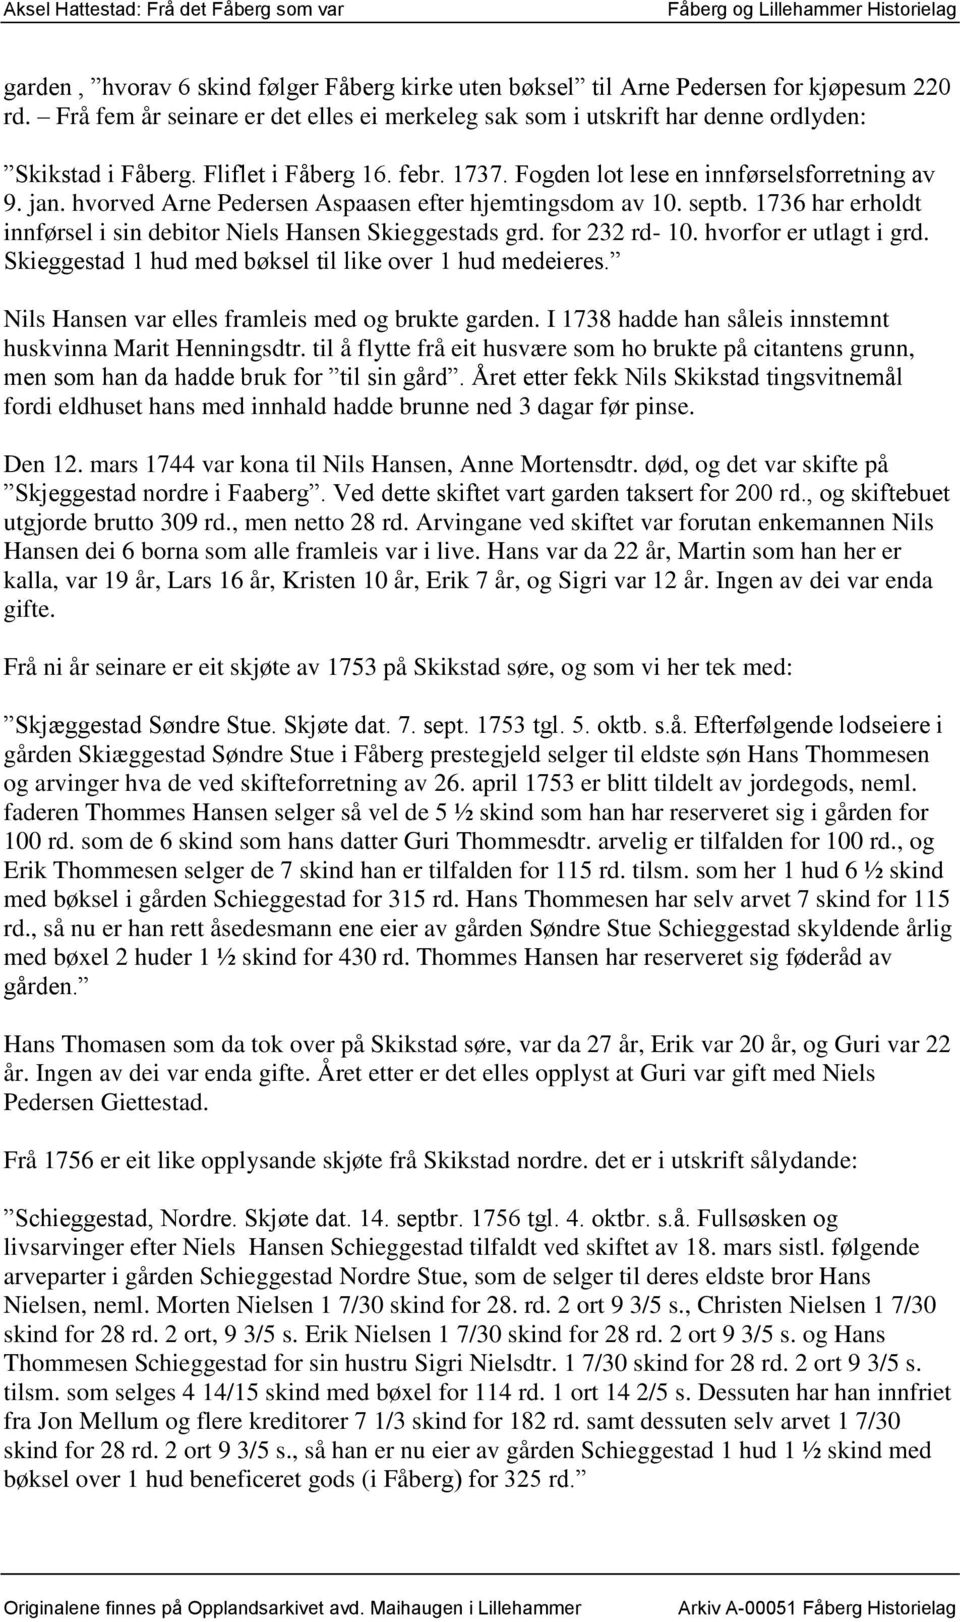 1736 har erholdt innførsel i sin debitor Niels Hansen Skieggestads grd. for 232 rd- 10. hvorfor er utlagt i grd. Skieggestad 1 hud med bøksel til like over 1 hud medeieres.